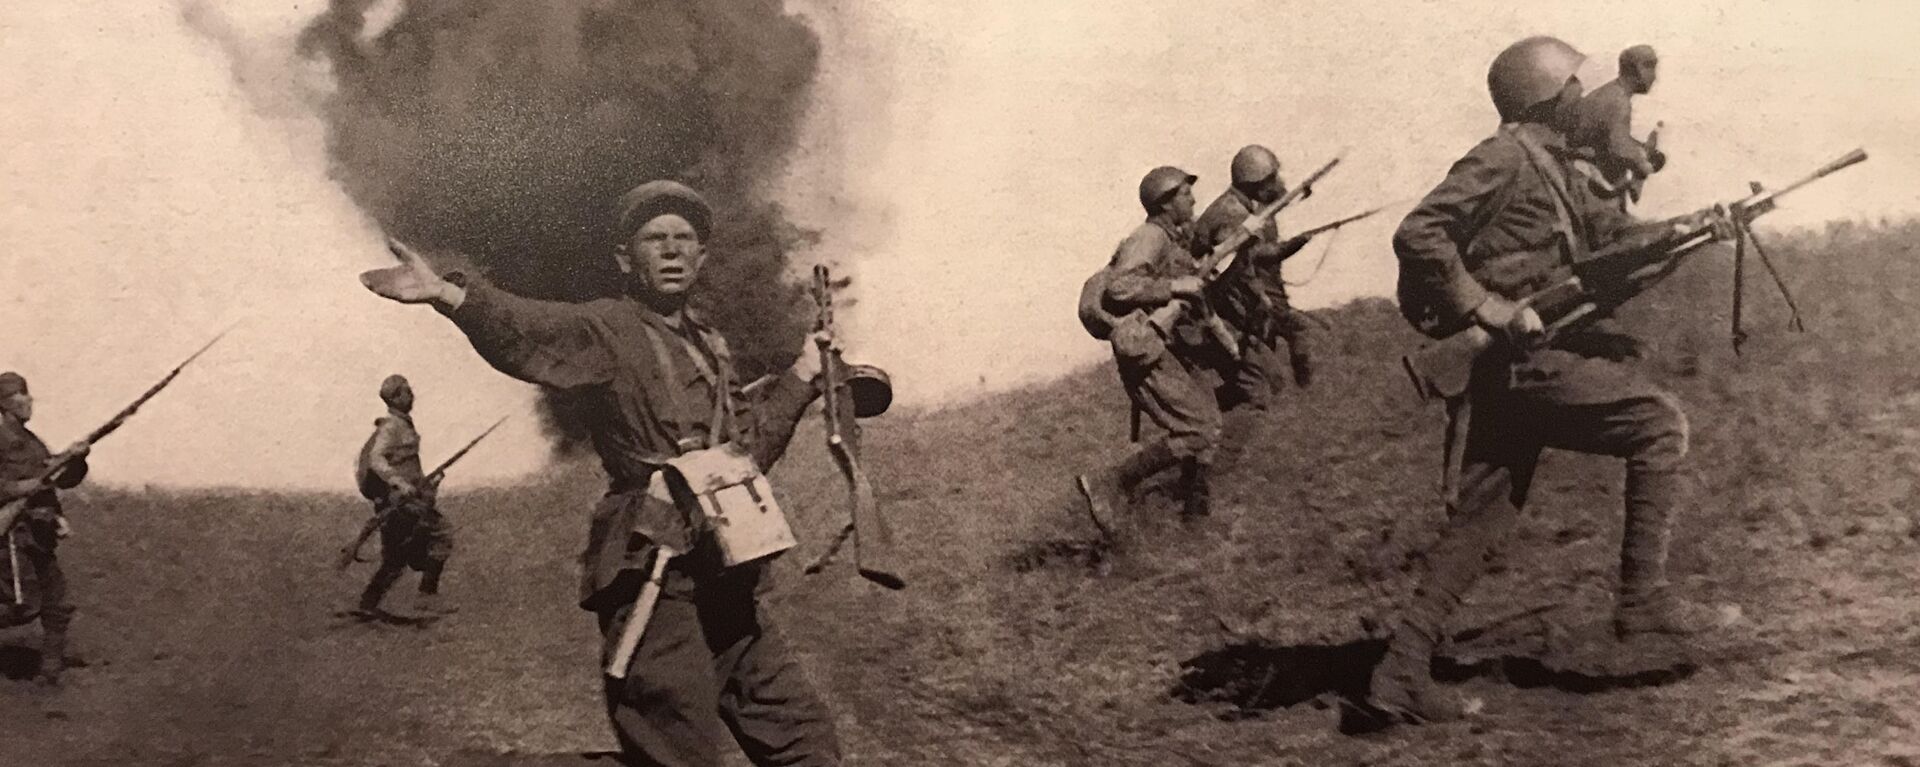 Борбена дејства Црвене армије на прилазима Стаљинграду  - Sputnik Србија, 1920, 20.12.2020